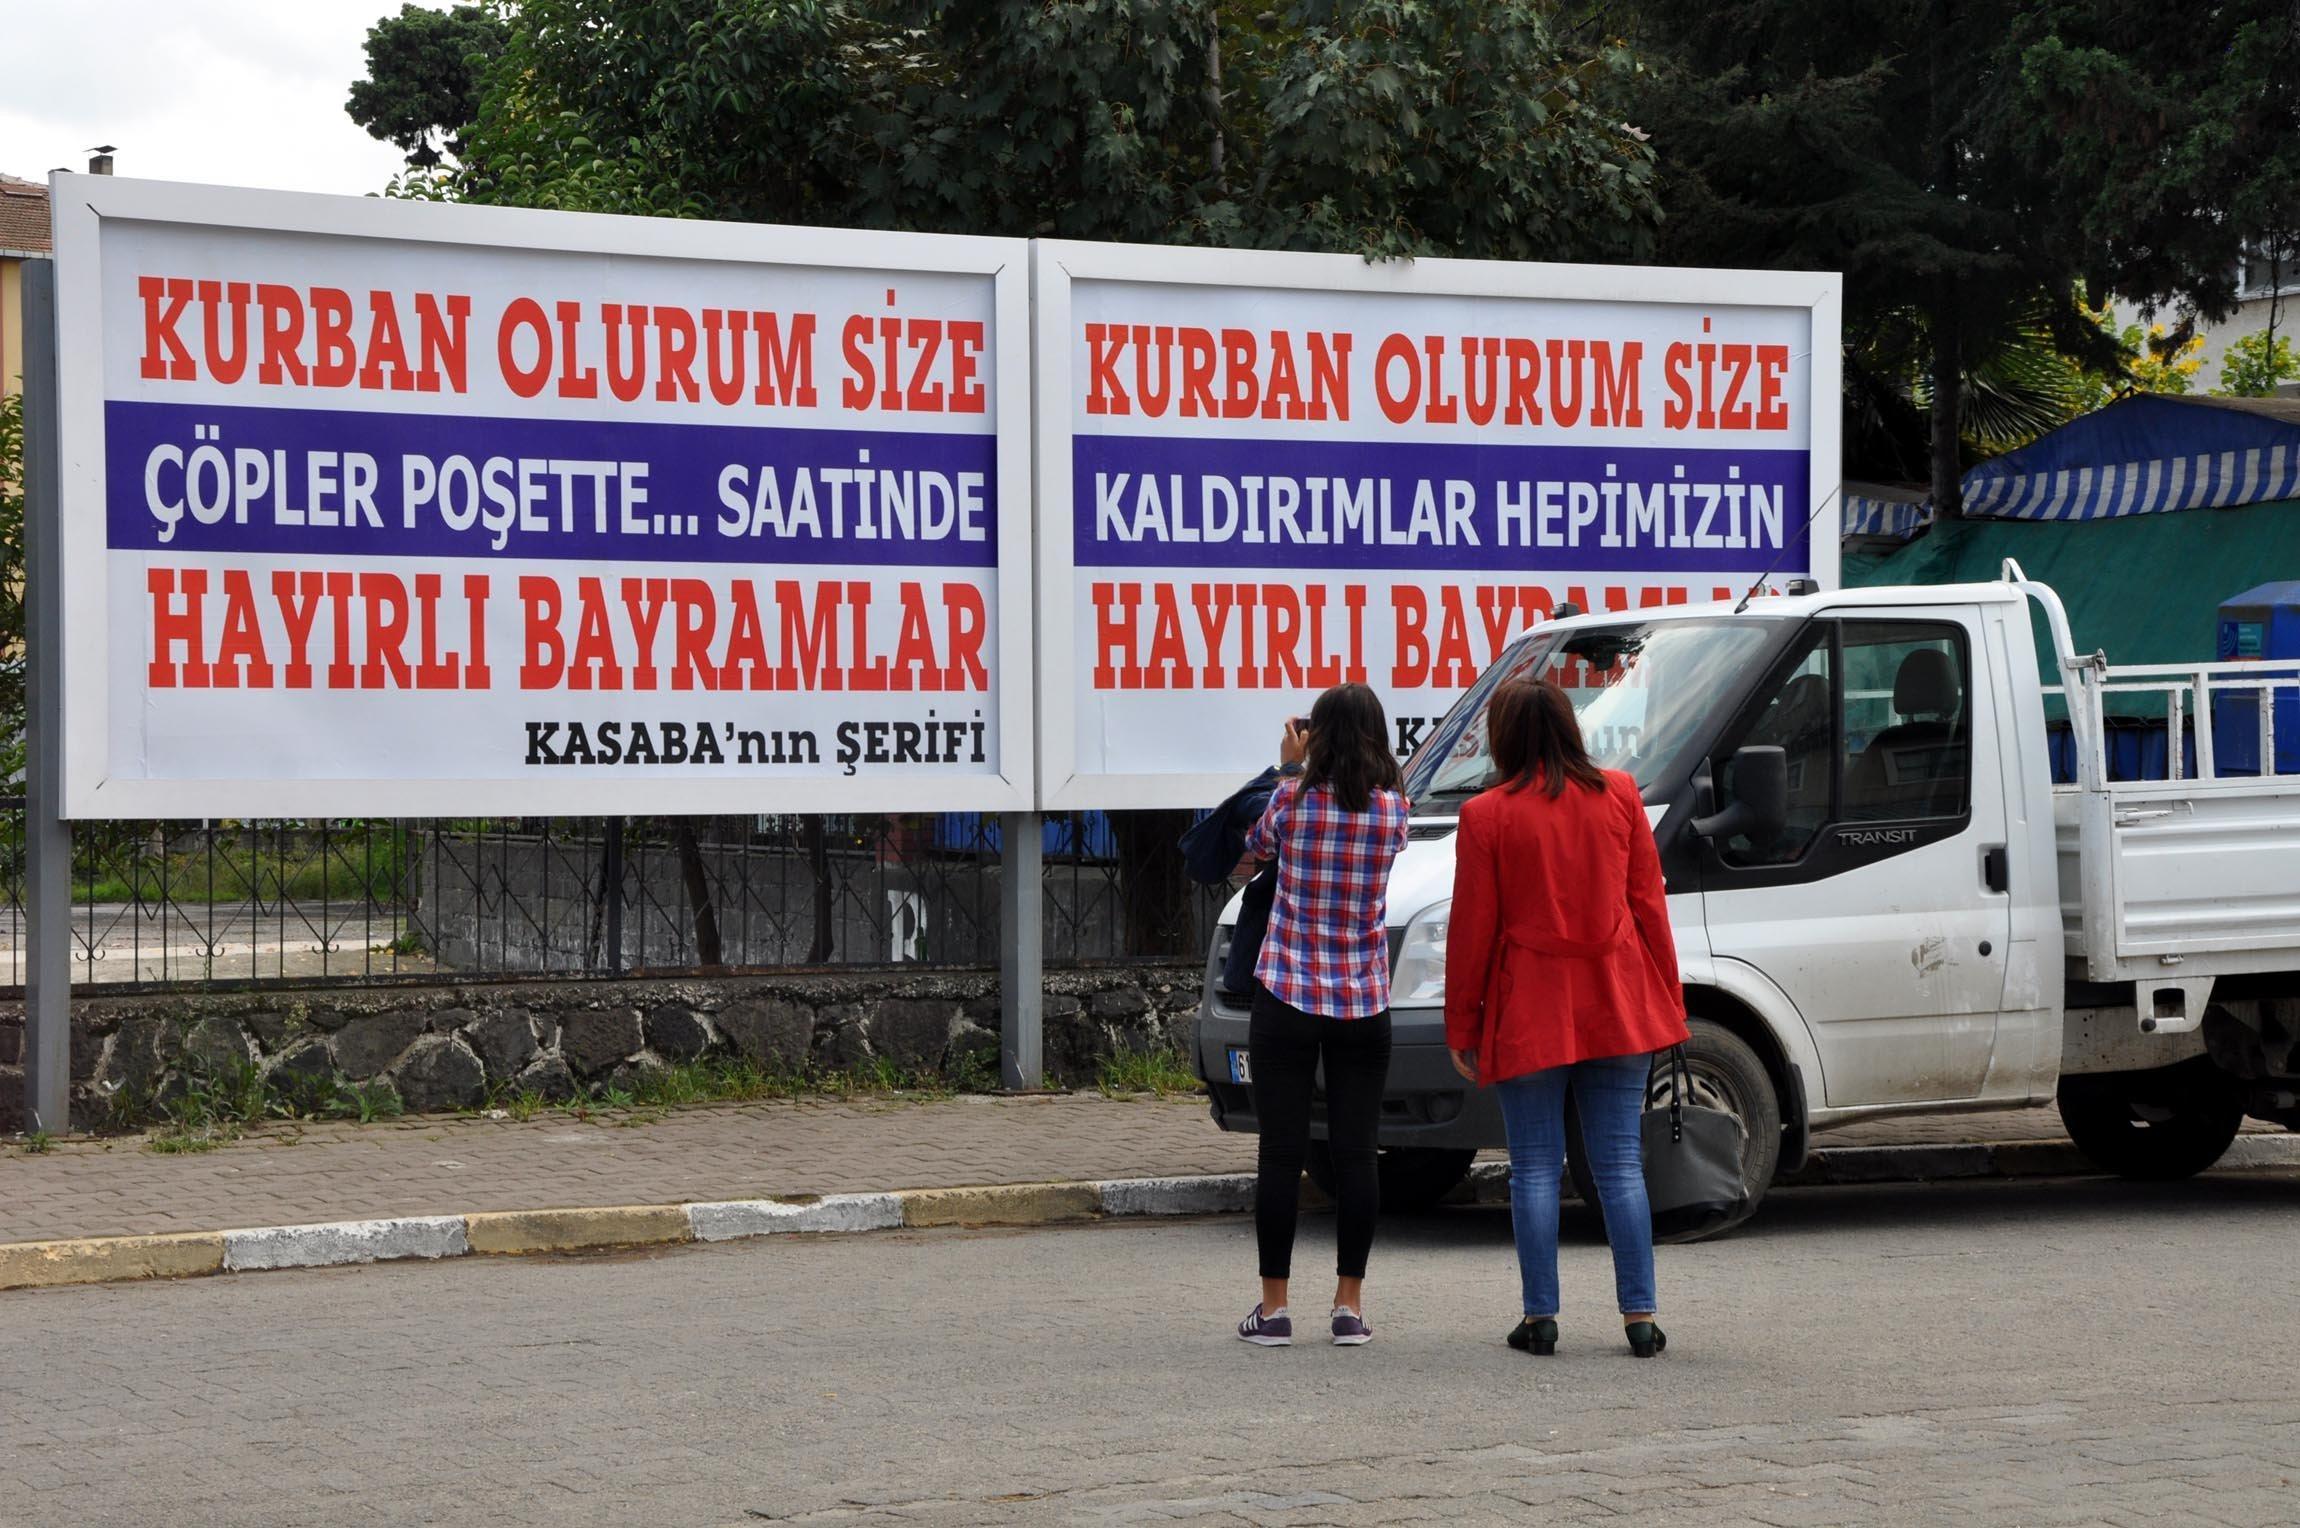 Beşikdüzü Belediye Başkanı Orhan Bıçakçıoğlu: Vaatlerin hiçbirini yapmadım